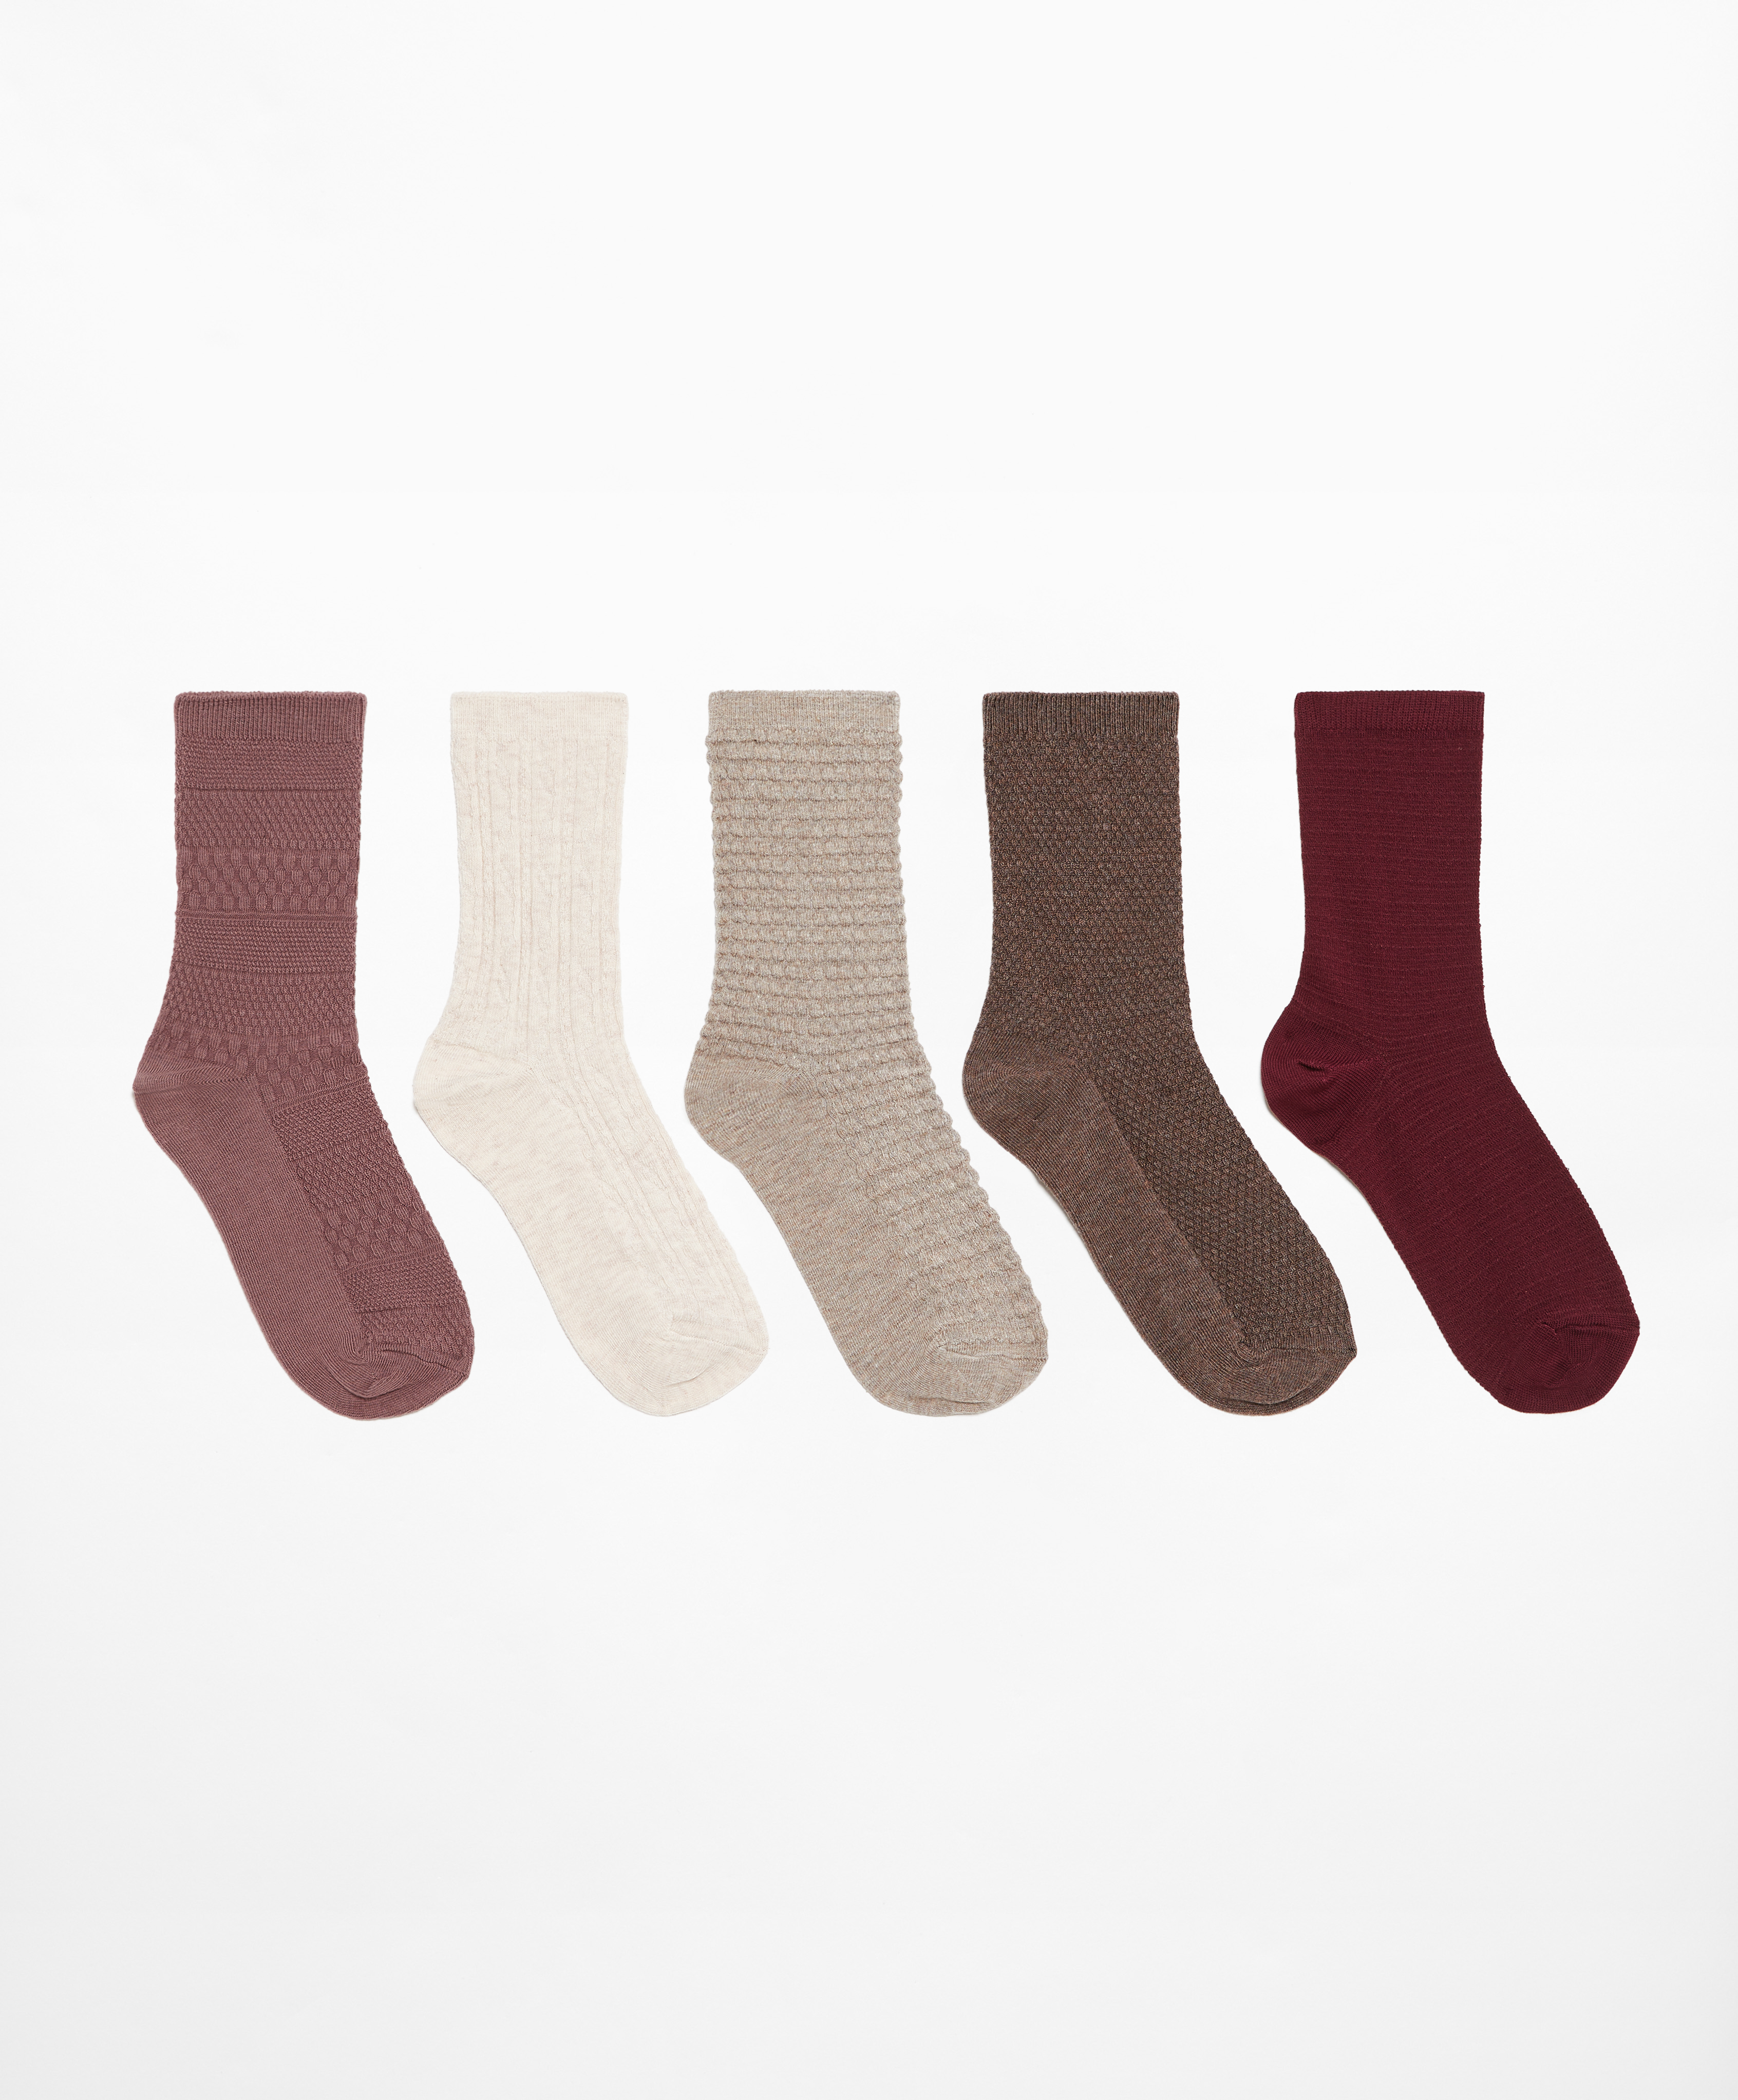 5 pares de calcetines classic mezcla algodón estructura